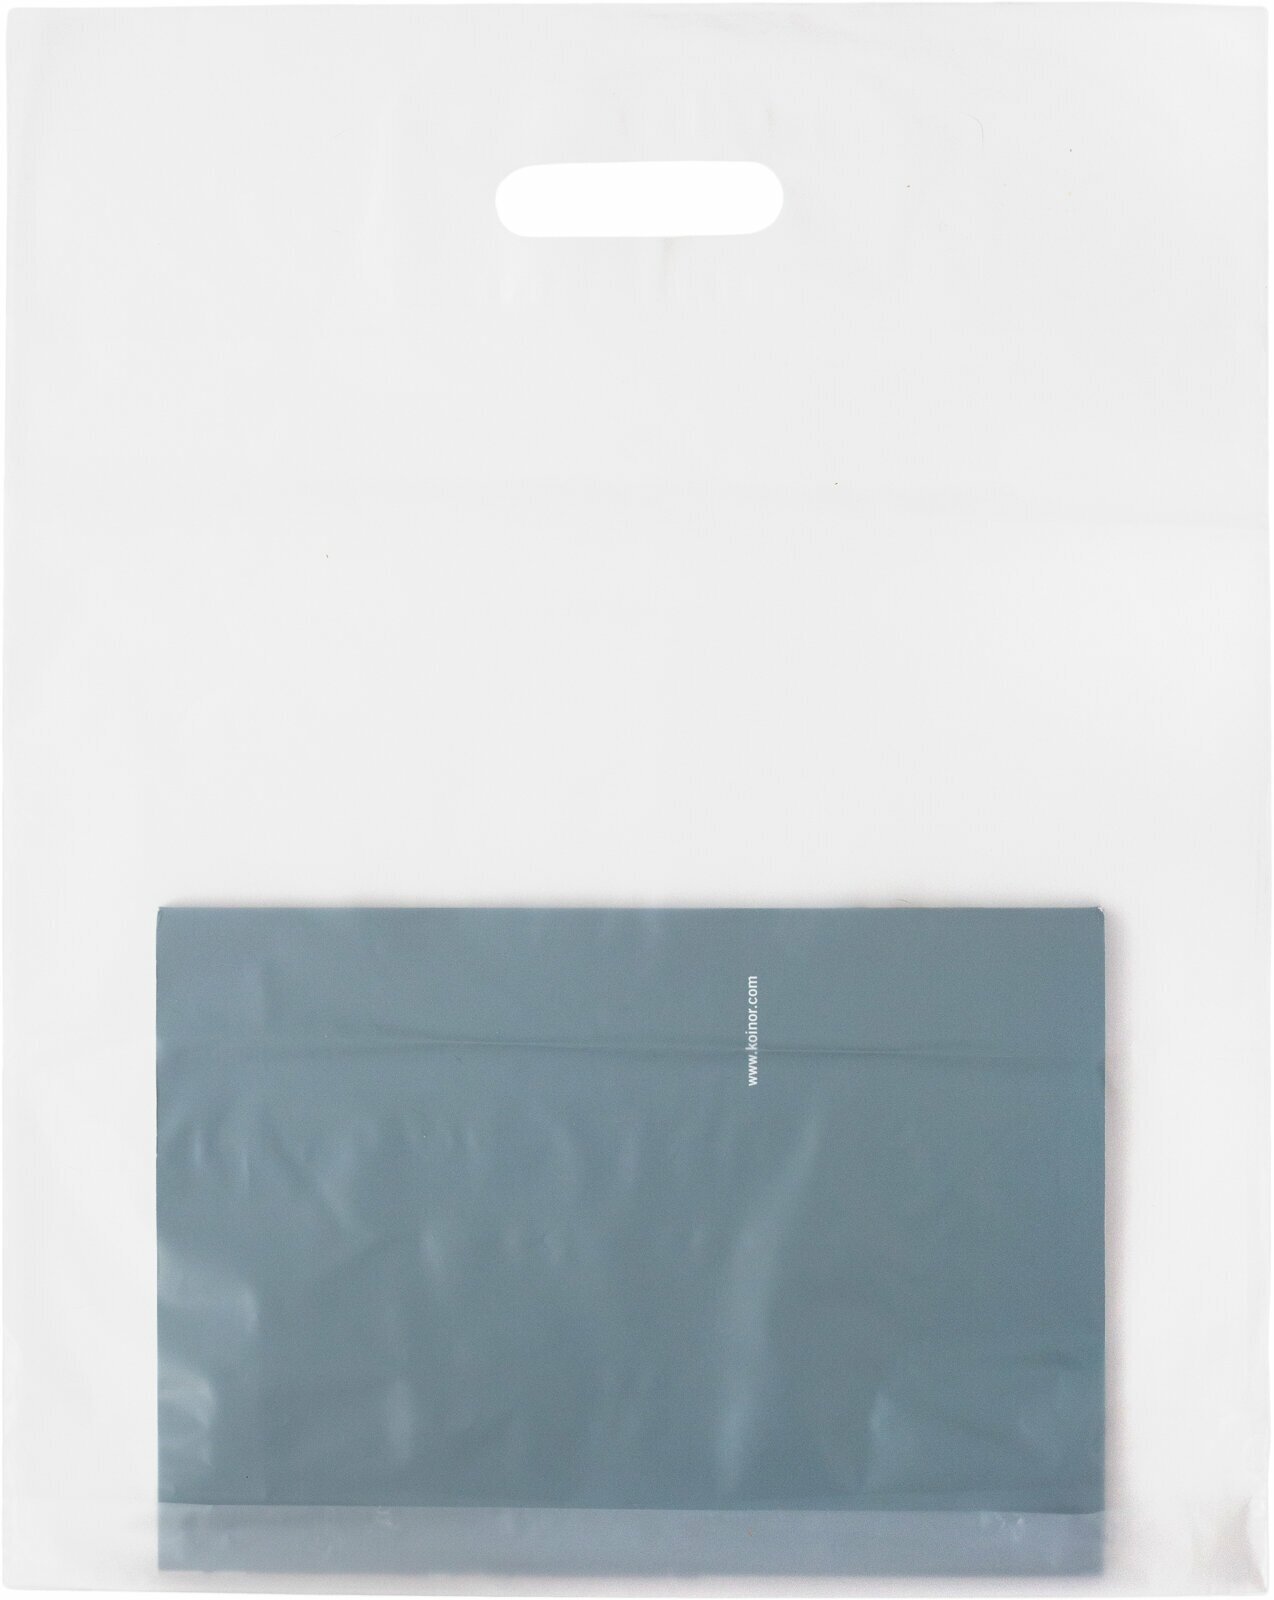 Пакет с вырубной ручкой, Пакет COEX прозрачный 40*50+3 см, 50 шт, 60 мкм, Упаковочный пакет Манфол / Пакет подарочный полиэтиленовый